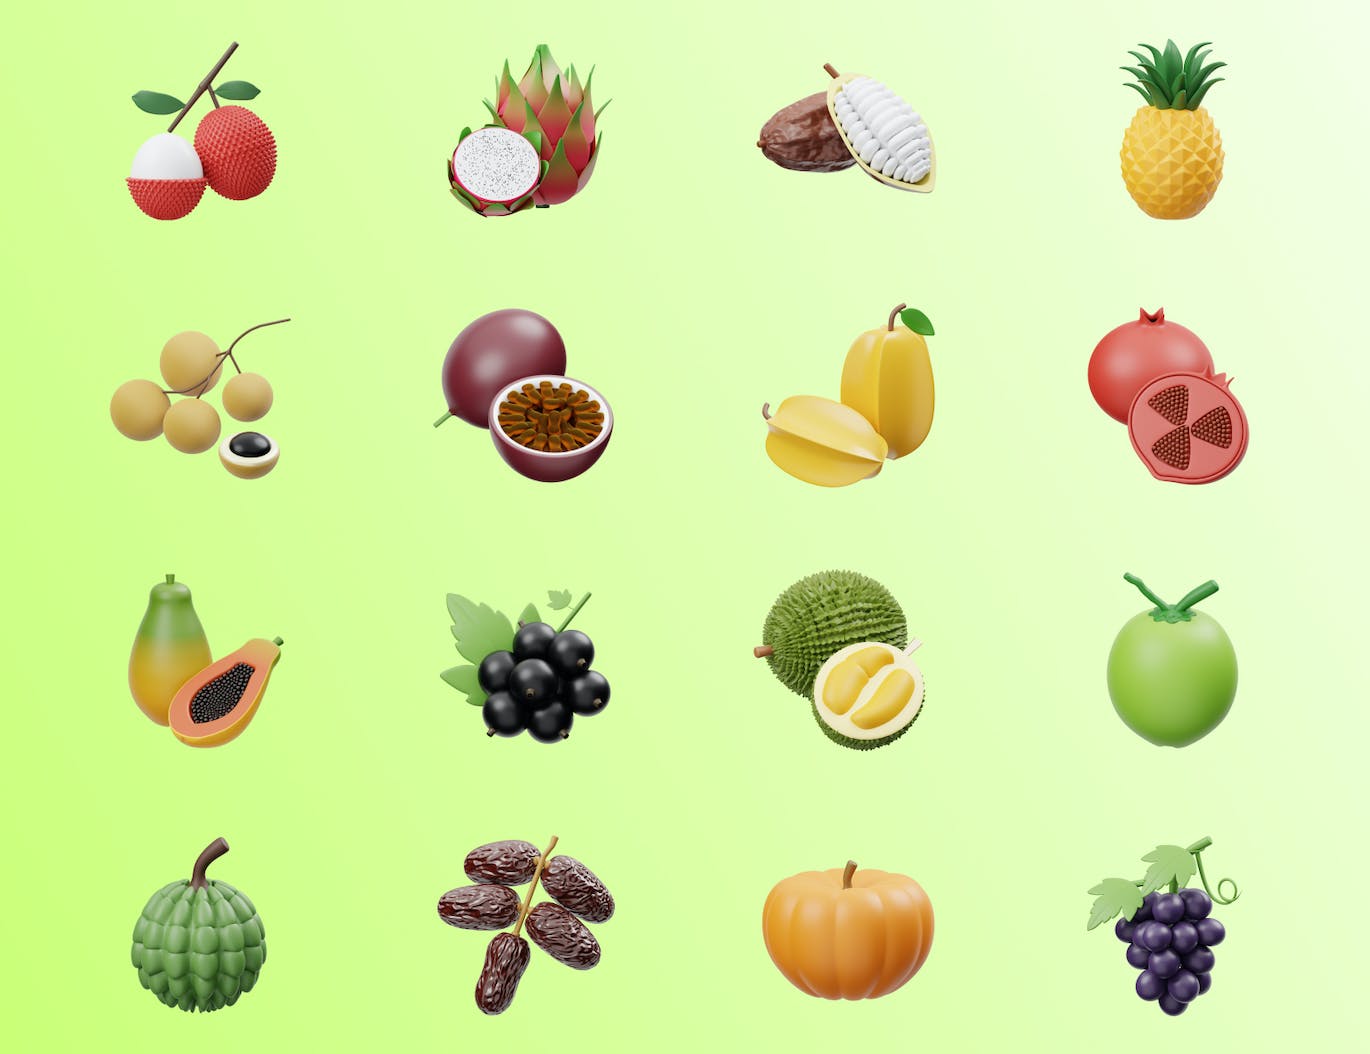 水果食品3D图标插画 Fruits 3D Icon